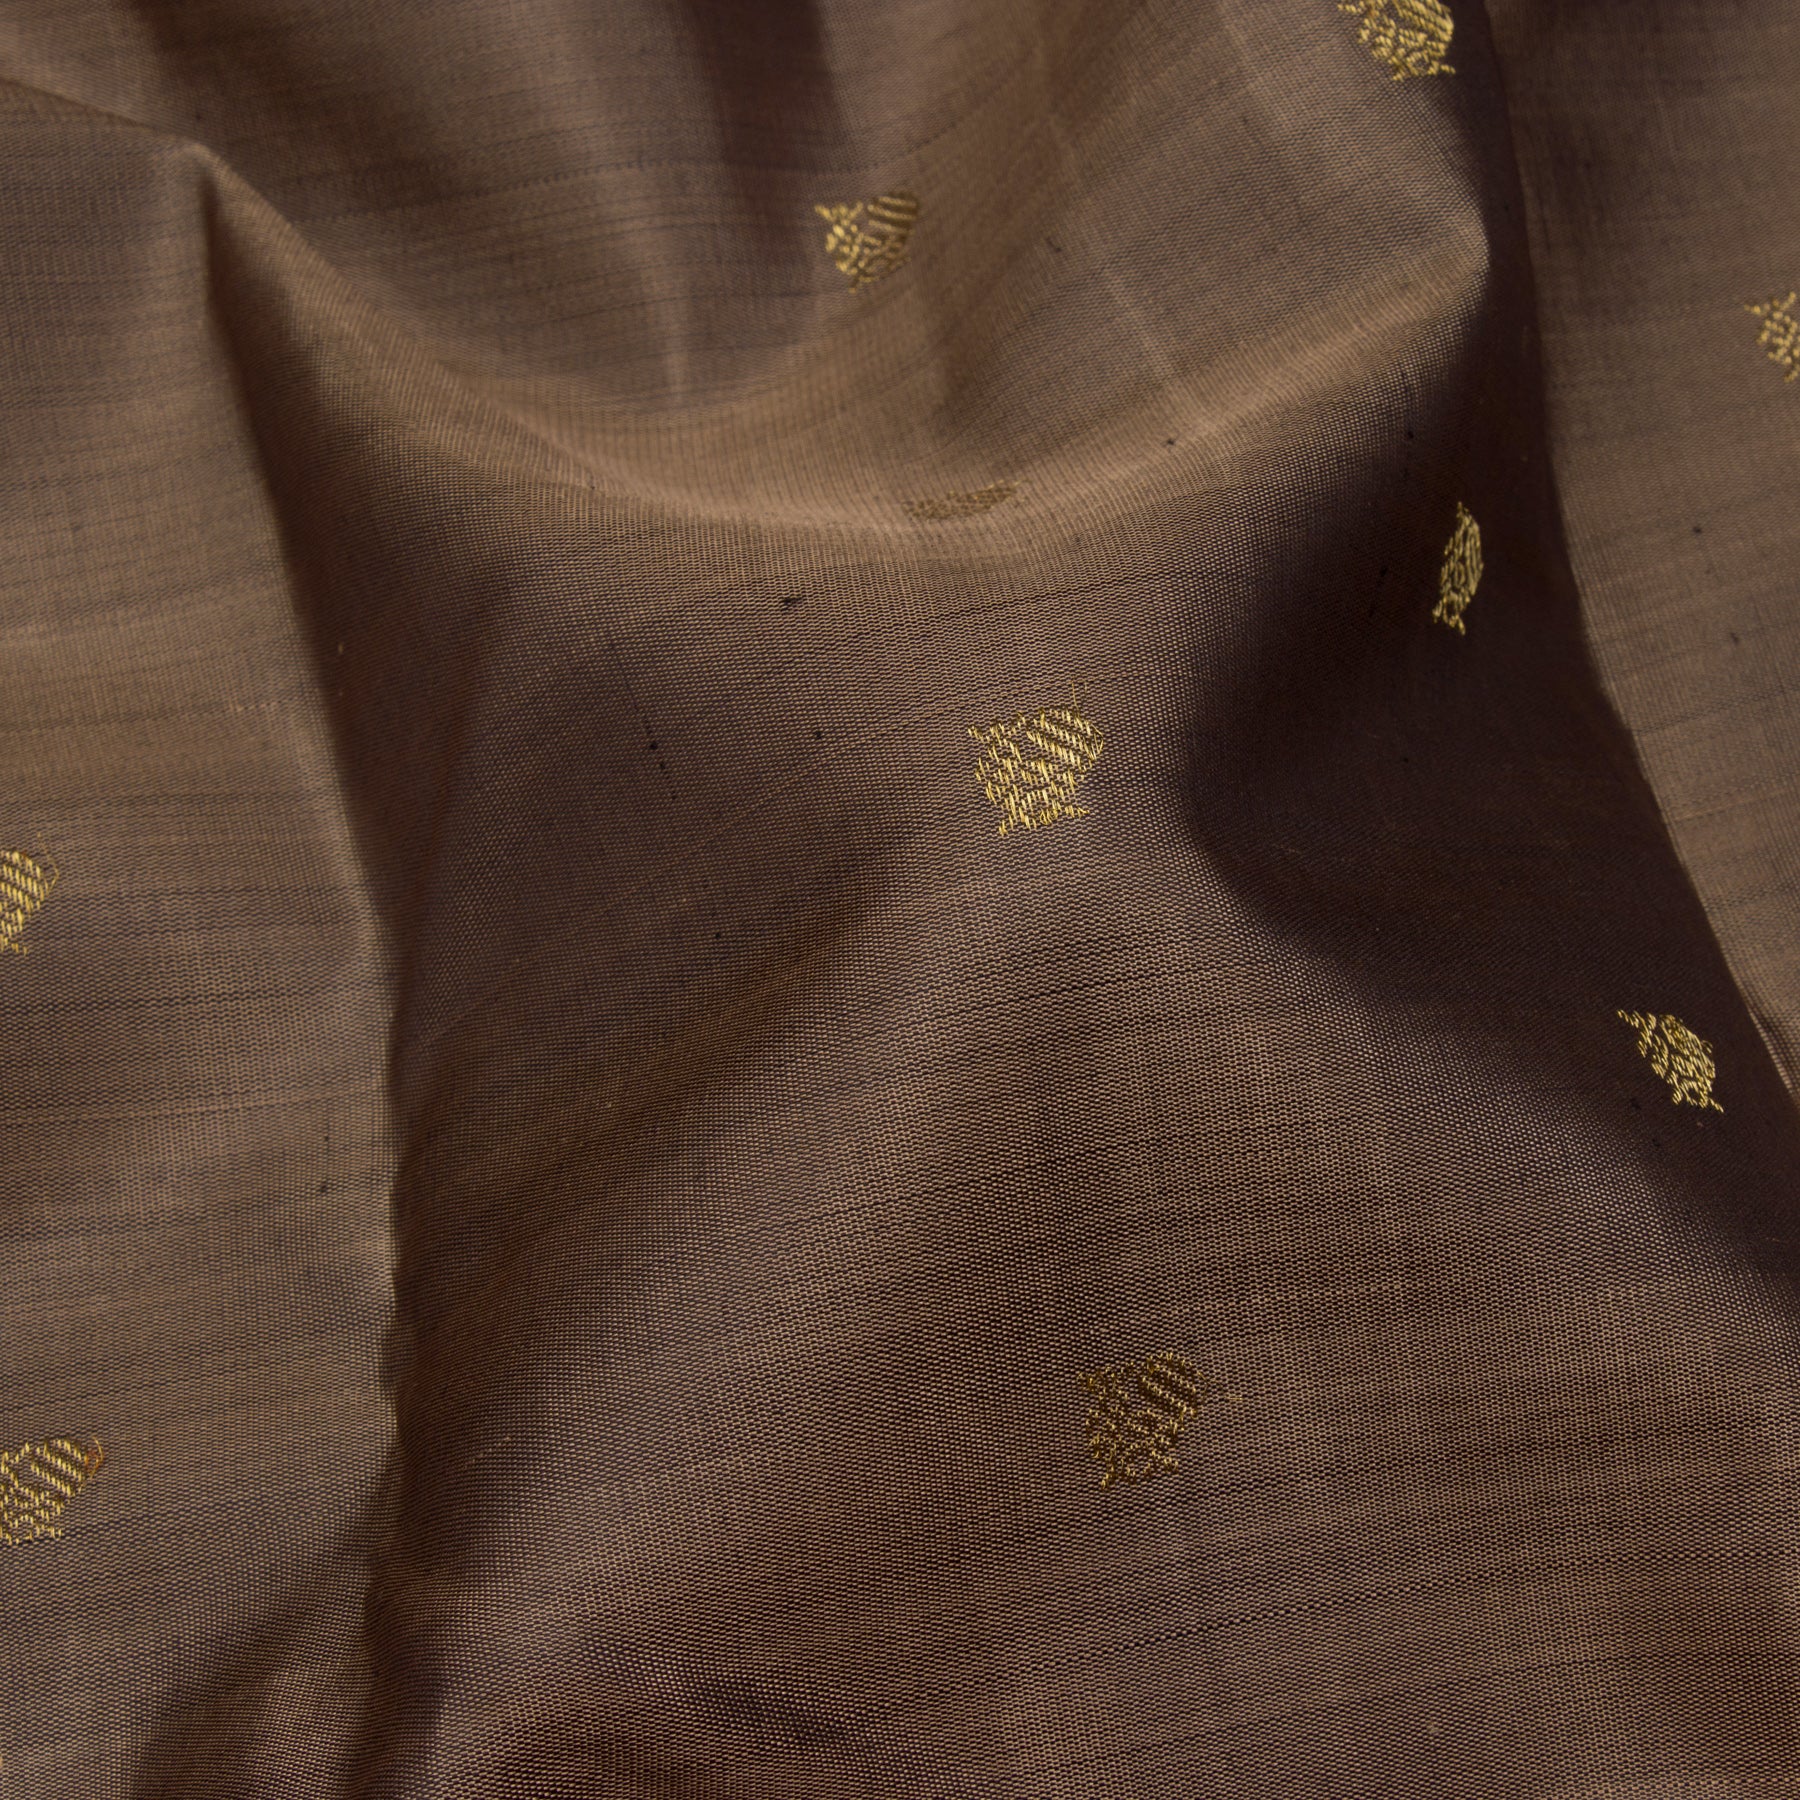 Kanakavalli Kanjivaram Silk Sari 23-595-HS001-13654 - Fabric View